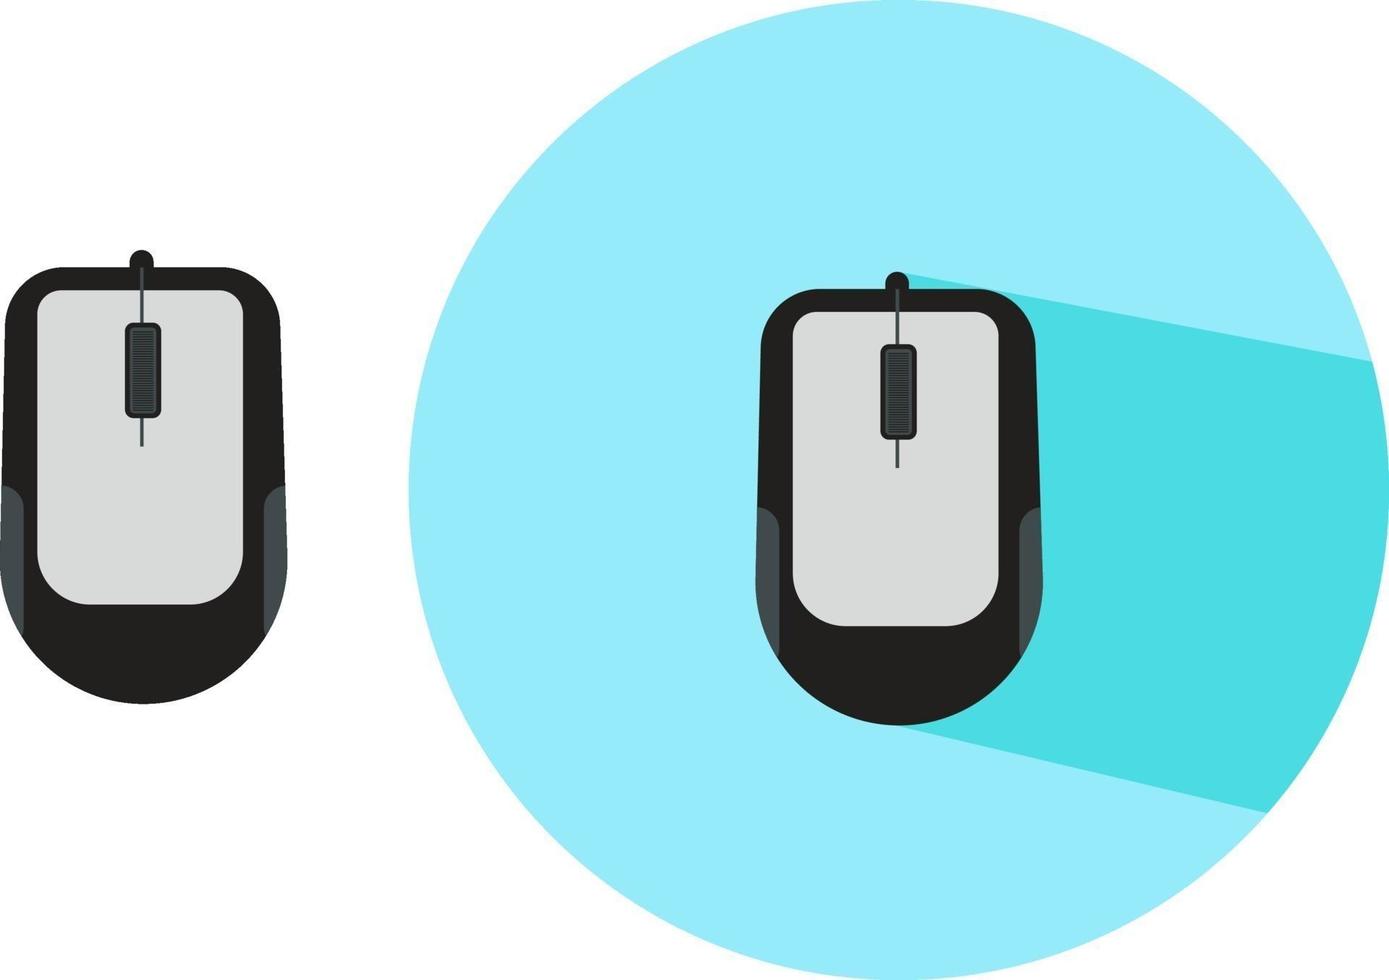 zwei PC-Mäuse, Illustration, Vektor auf weißem Hintergrund.